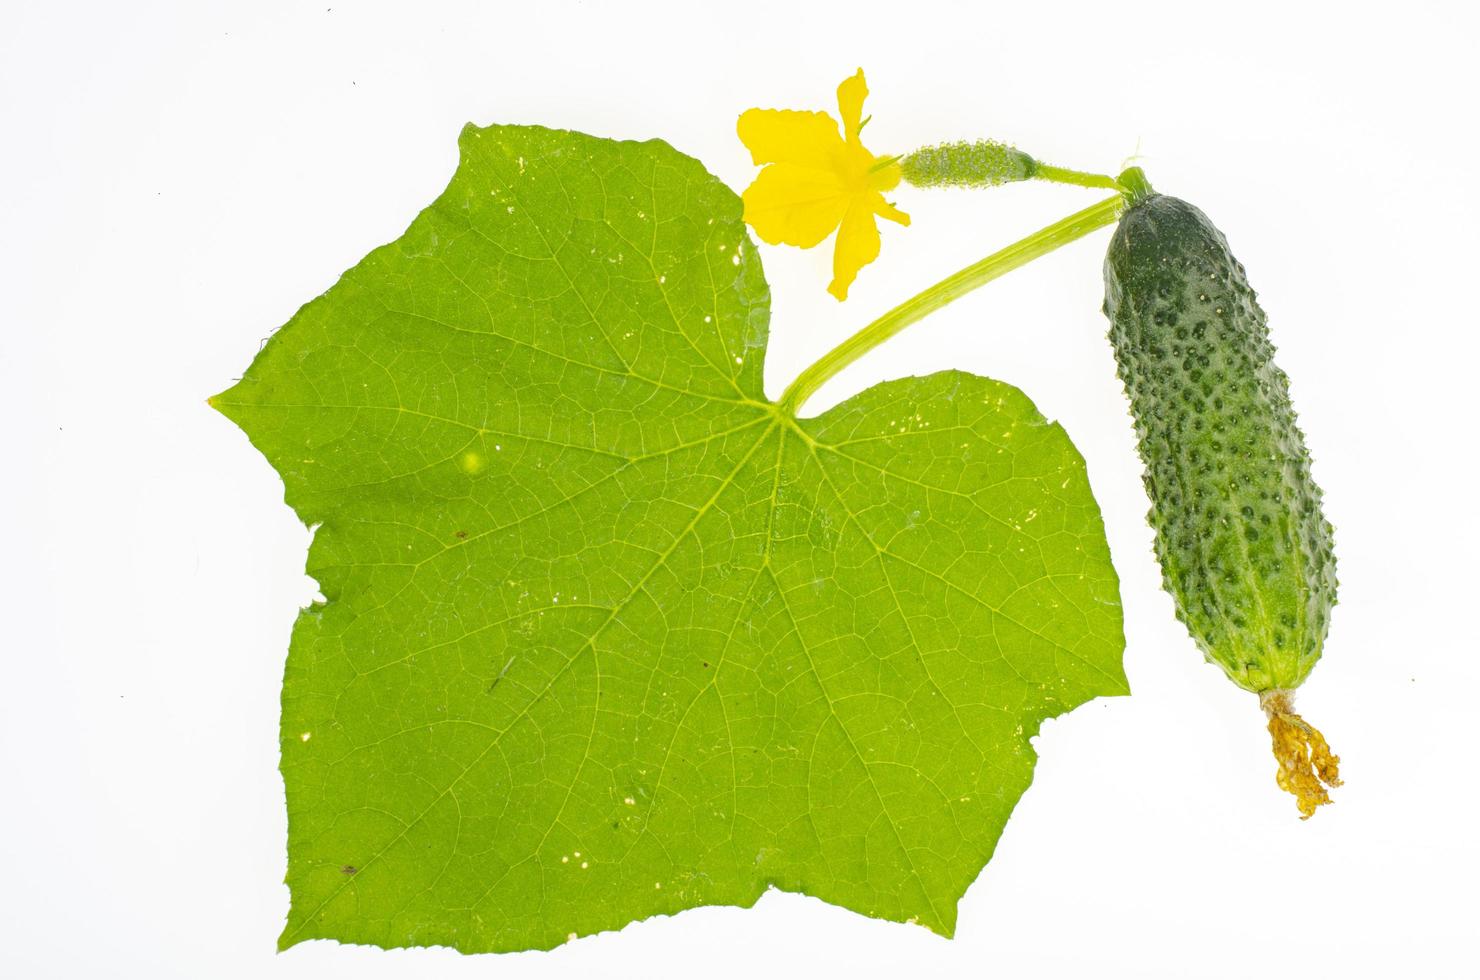 folha verde e fruta do pepino fresco, isolado no fundo branco. foto de estúdio